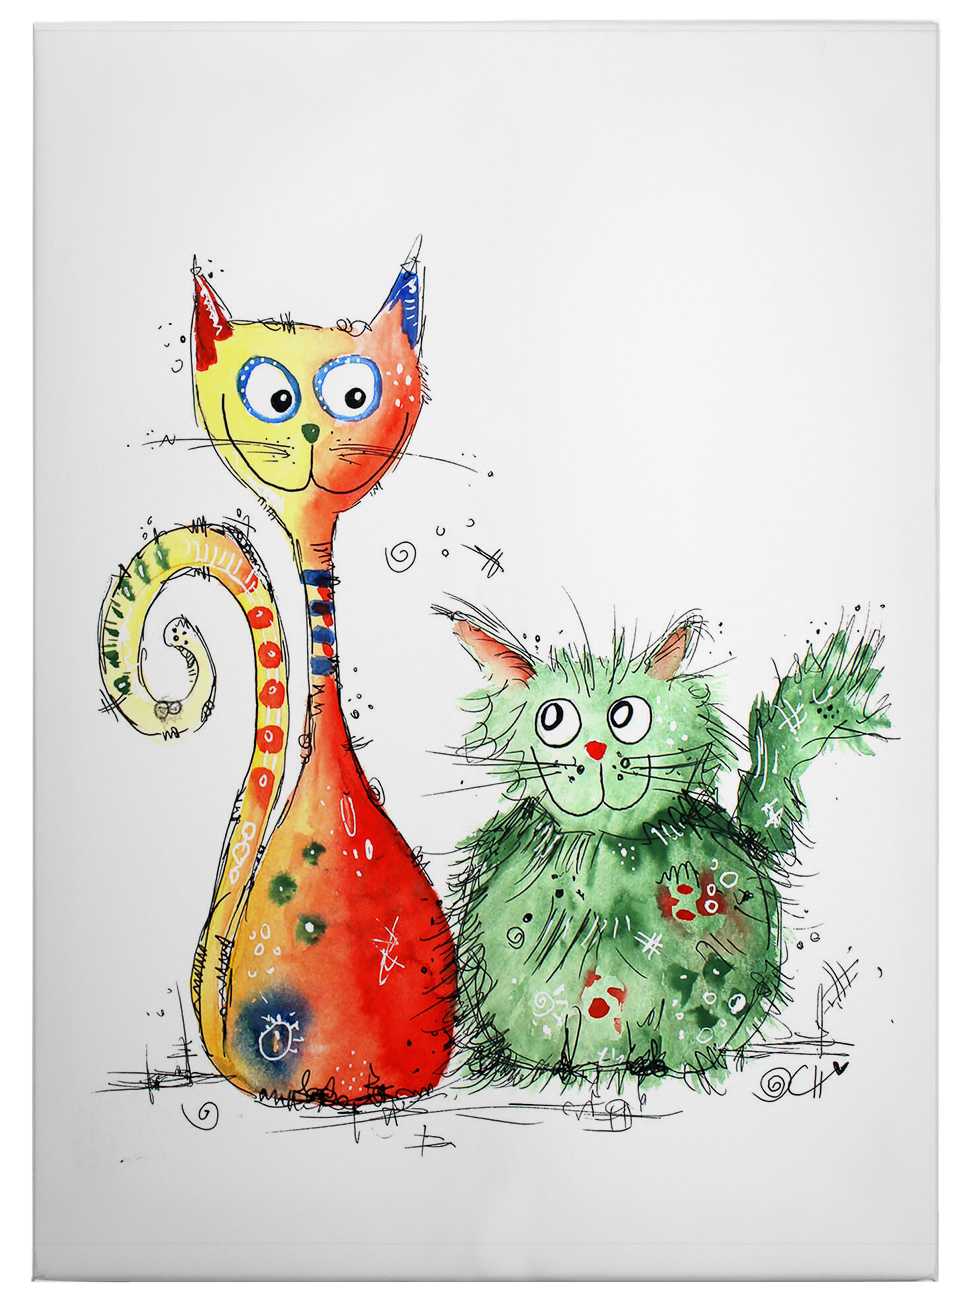             Tableau toile Hagenmeyer meilleurs amis, chats colorés - 0,50 m x 0,70 m
        